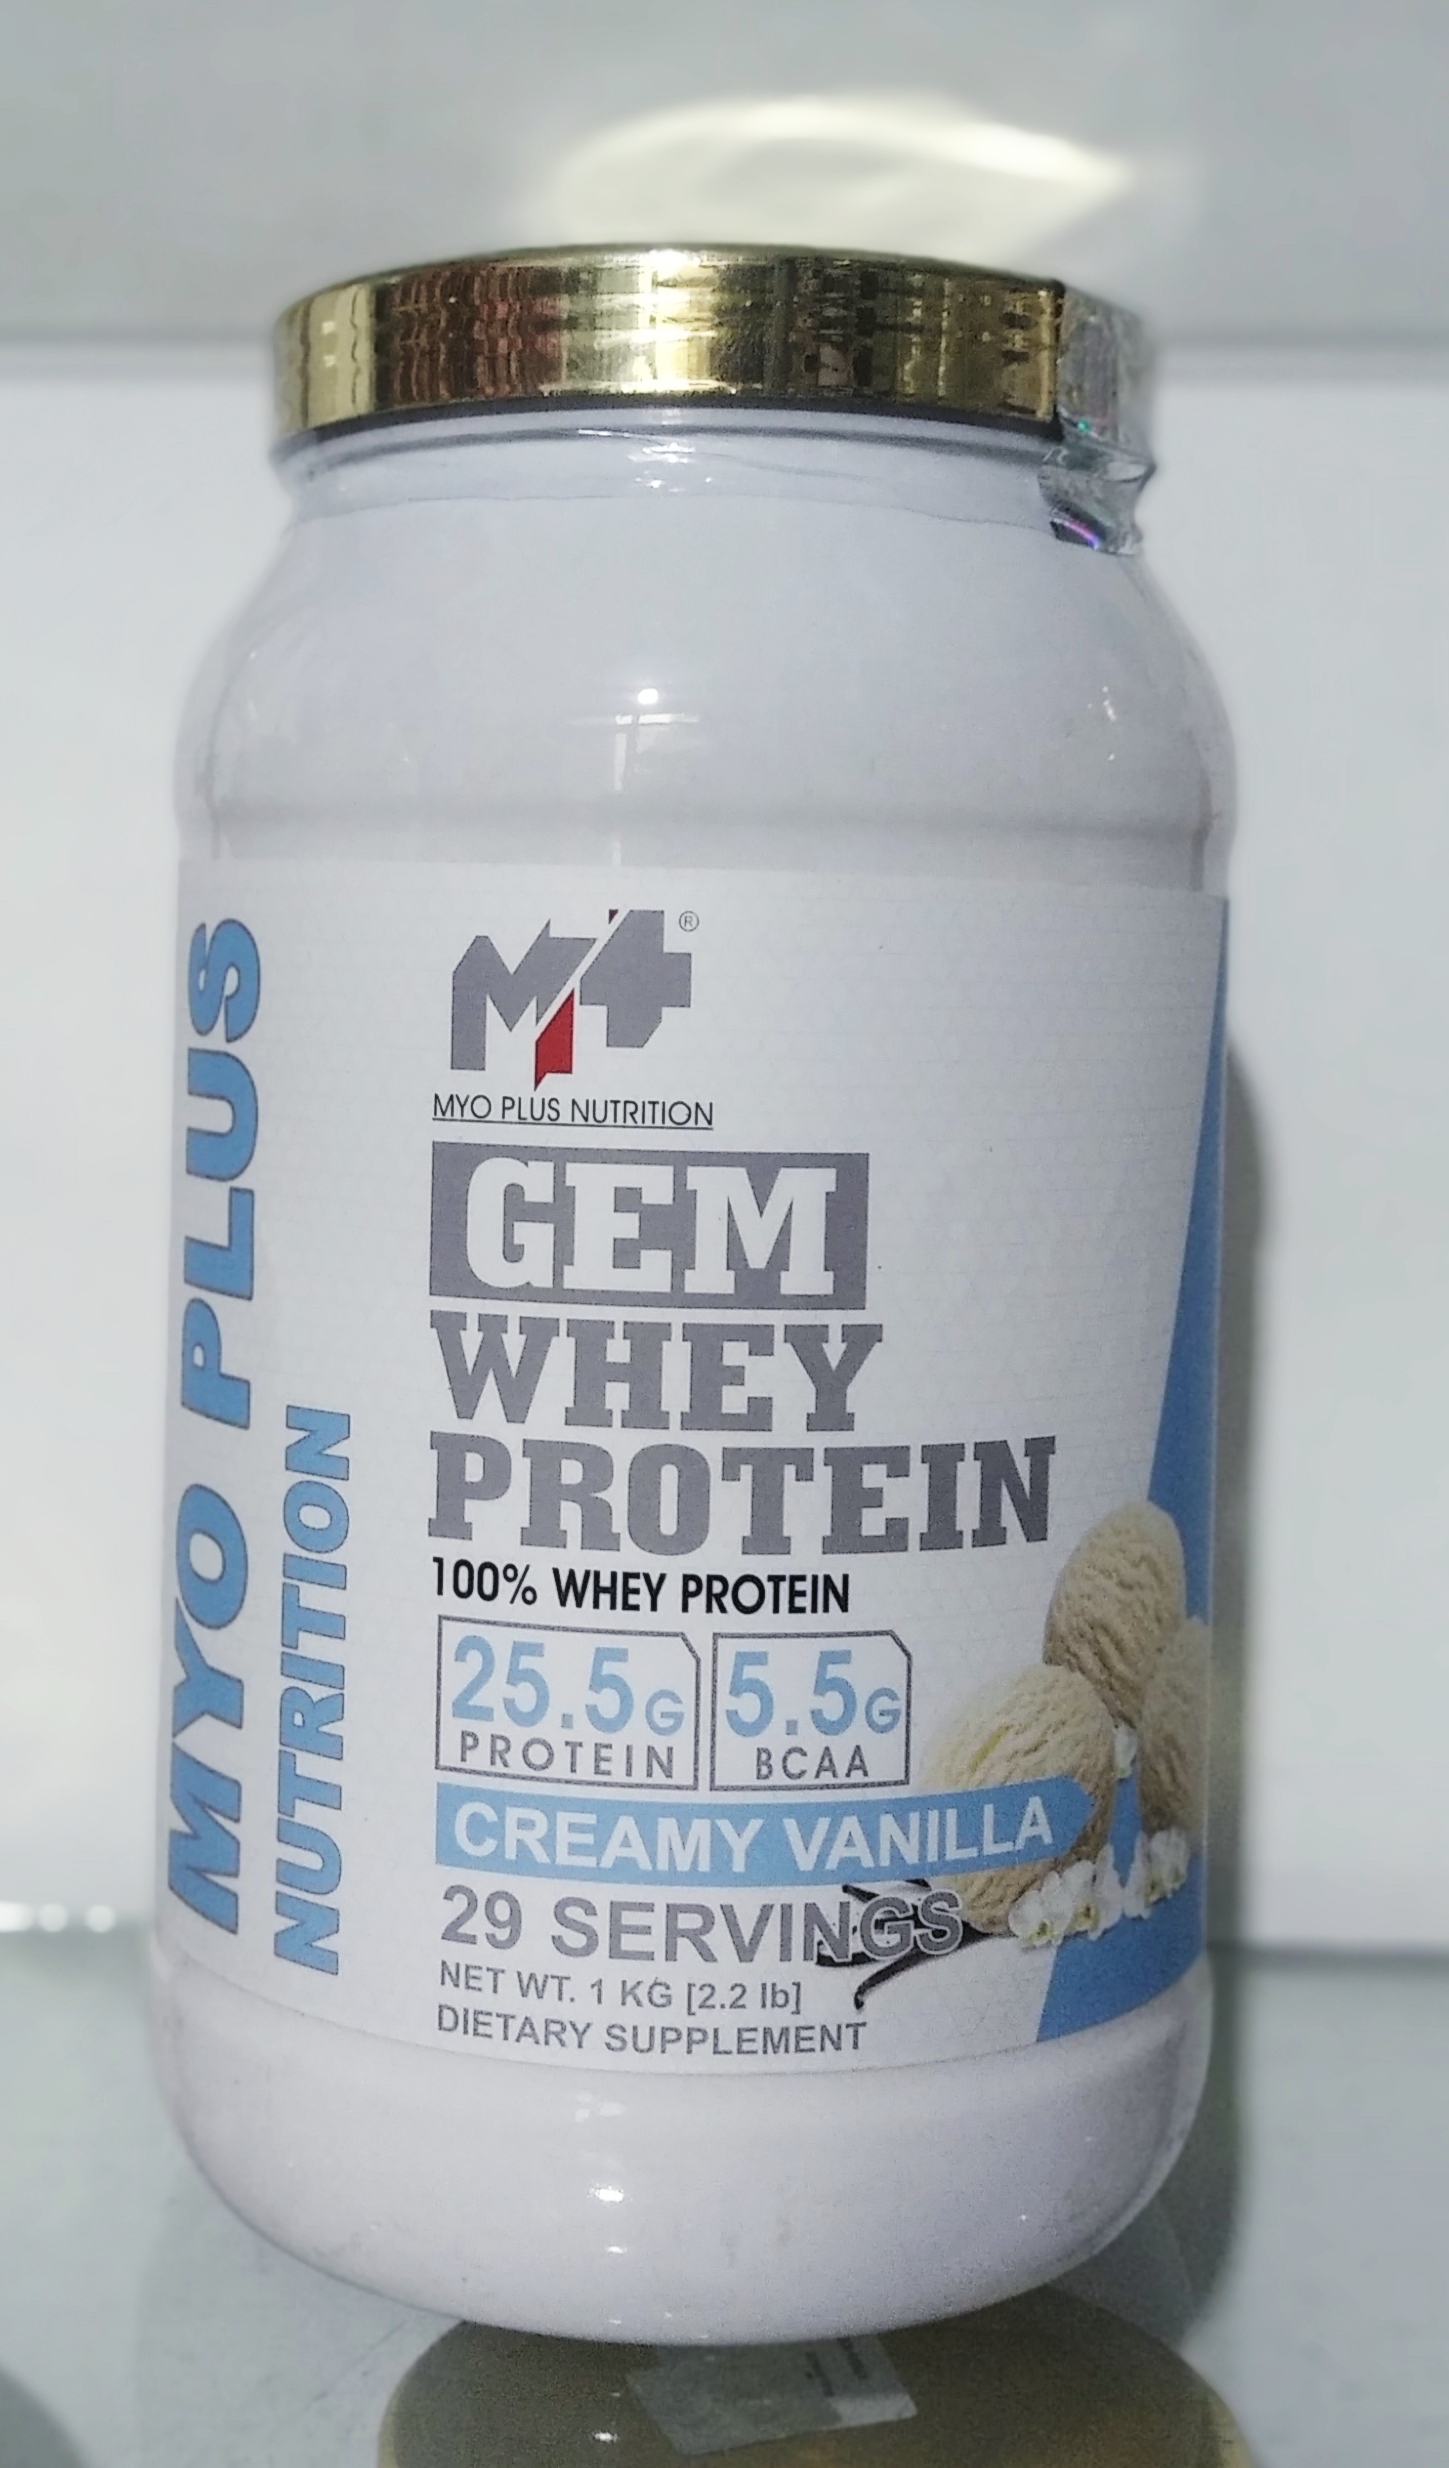 Gem Whey Protein